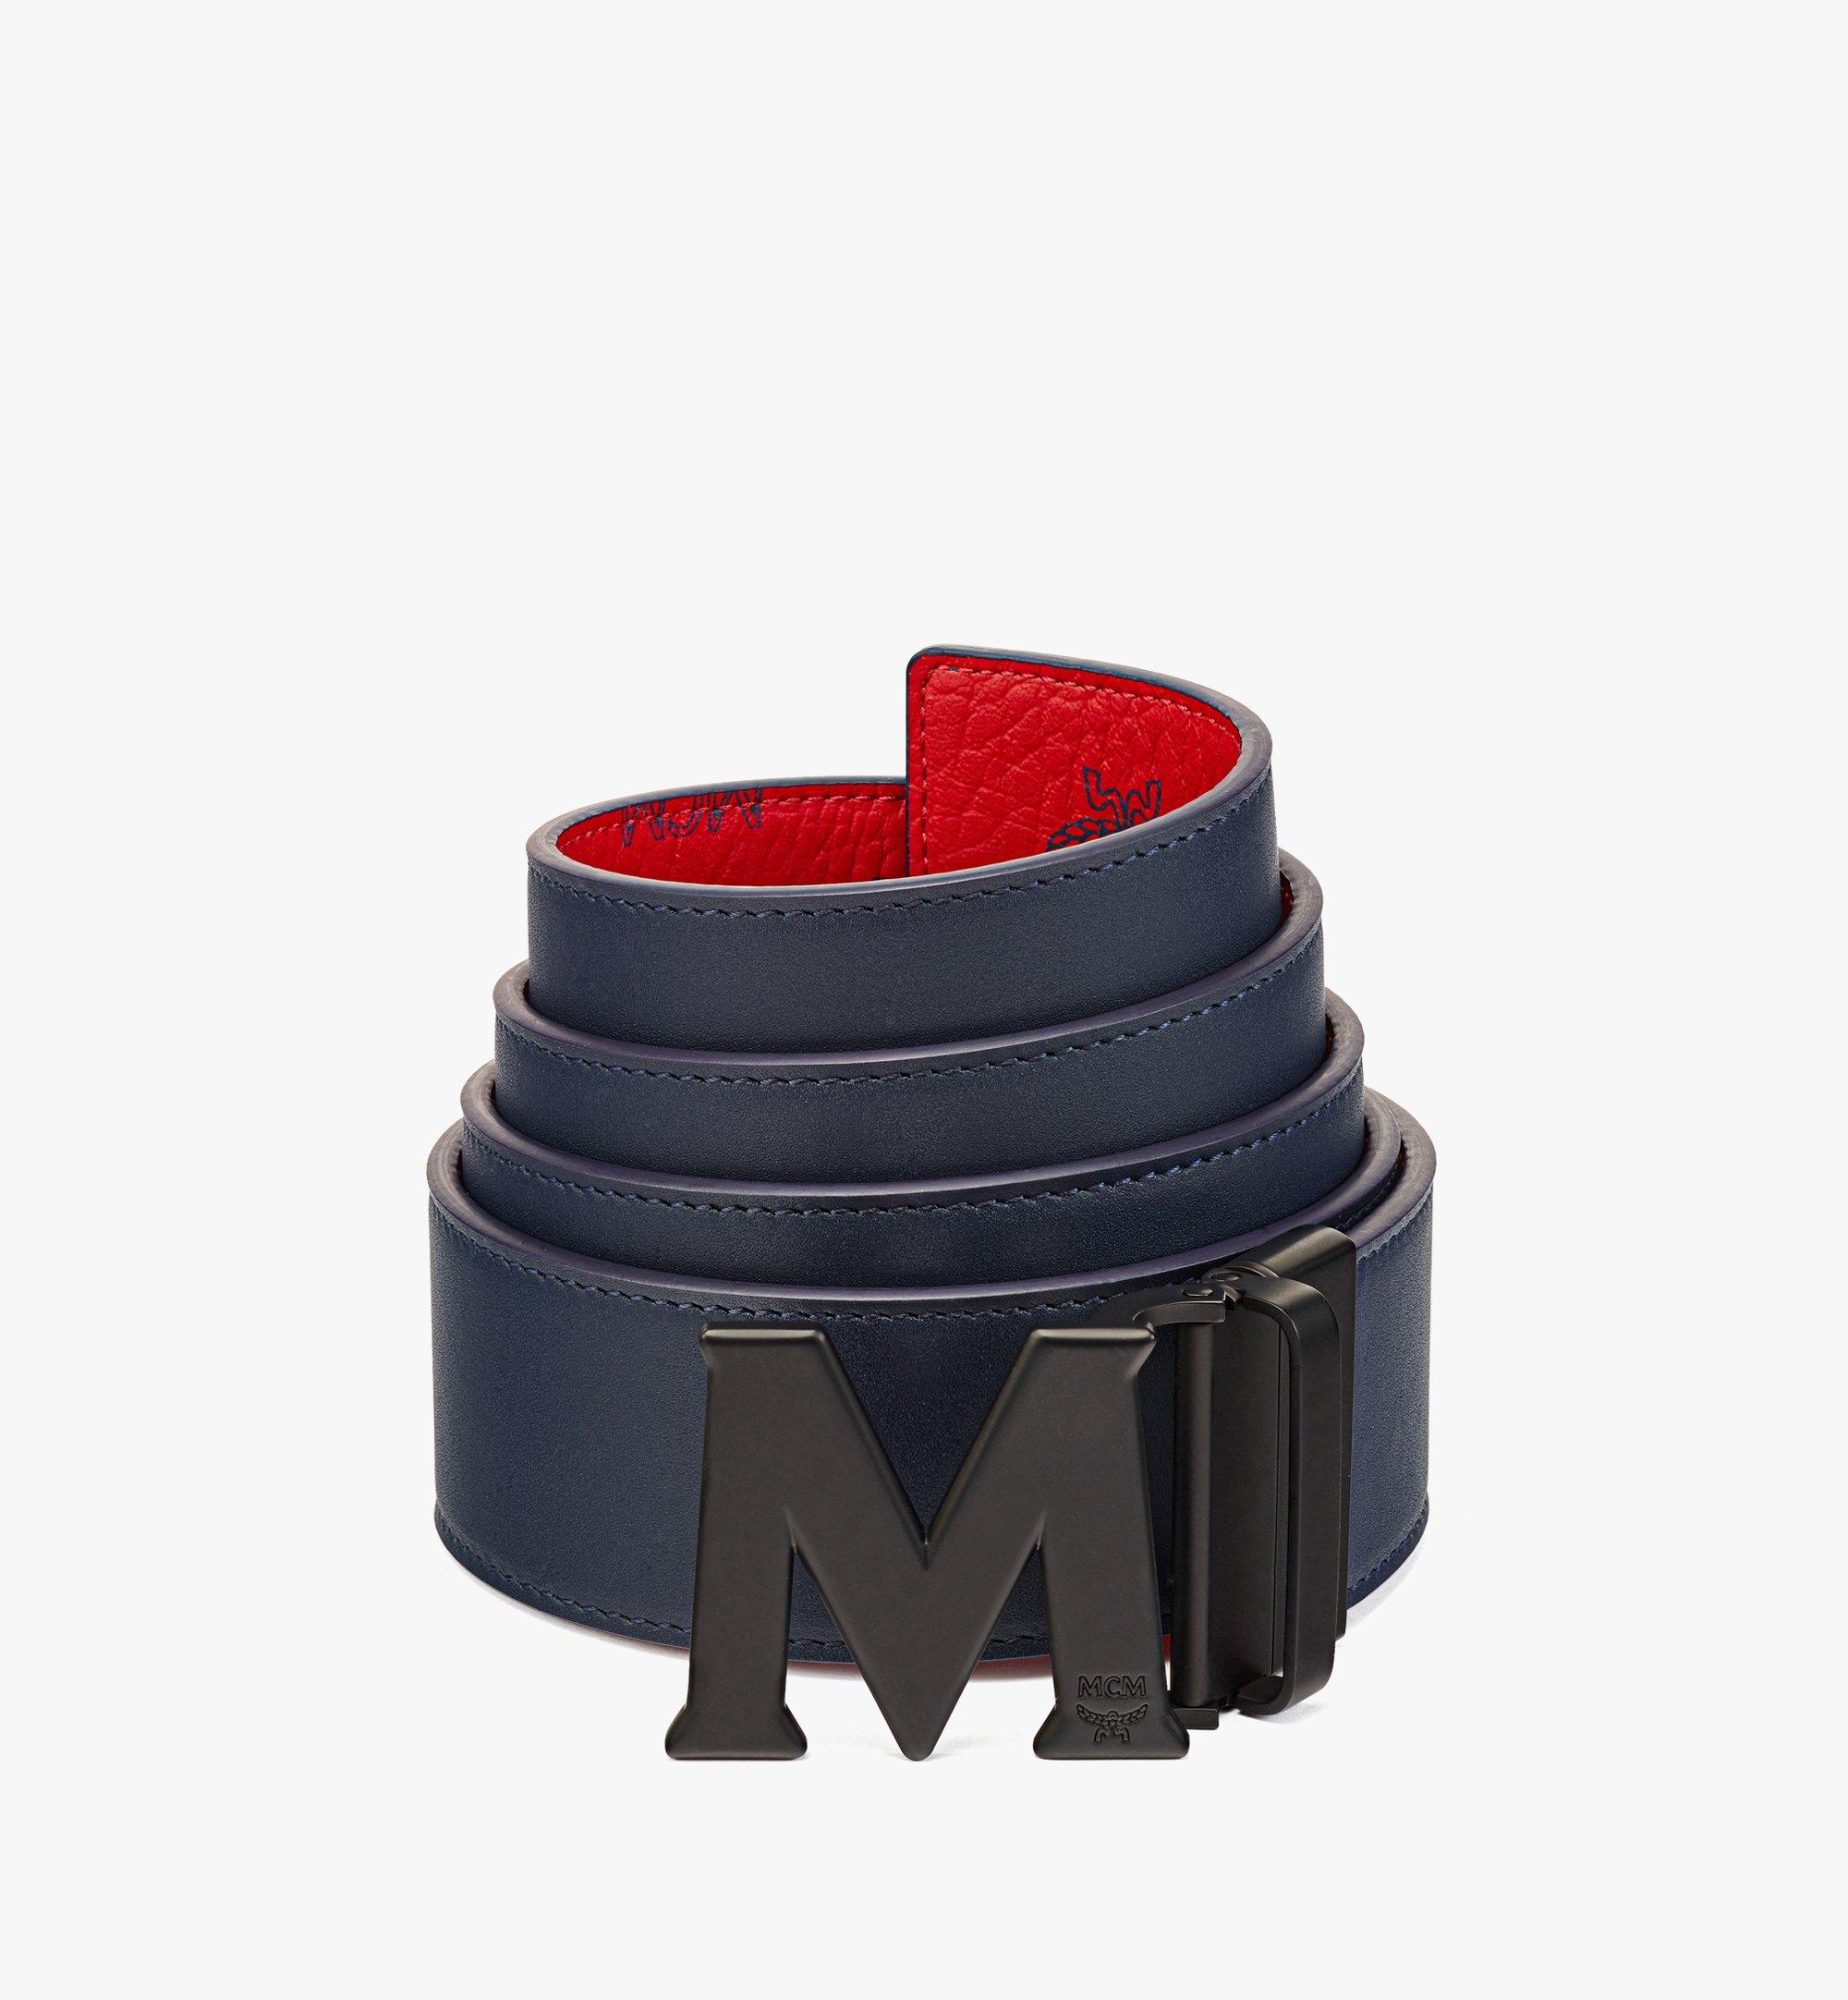 MCM Claus Matte M Reversible Belt 1.75” in Visetos Red MXBAAVI08XC001 Alternate View 1